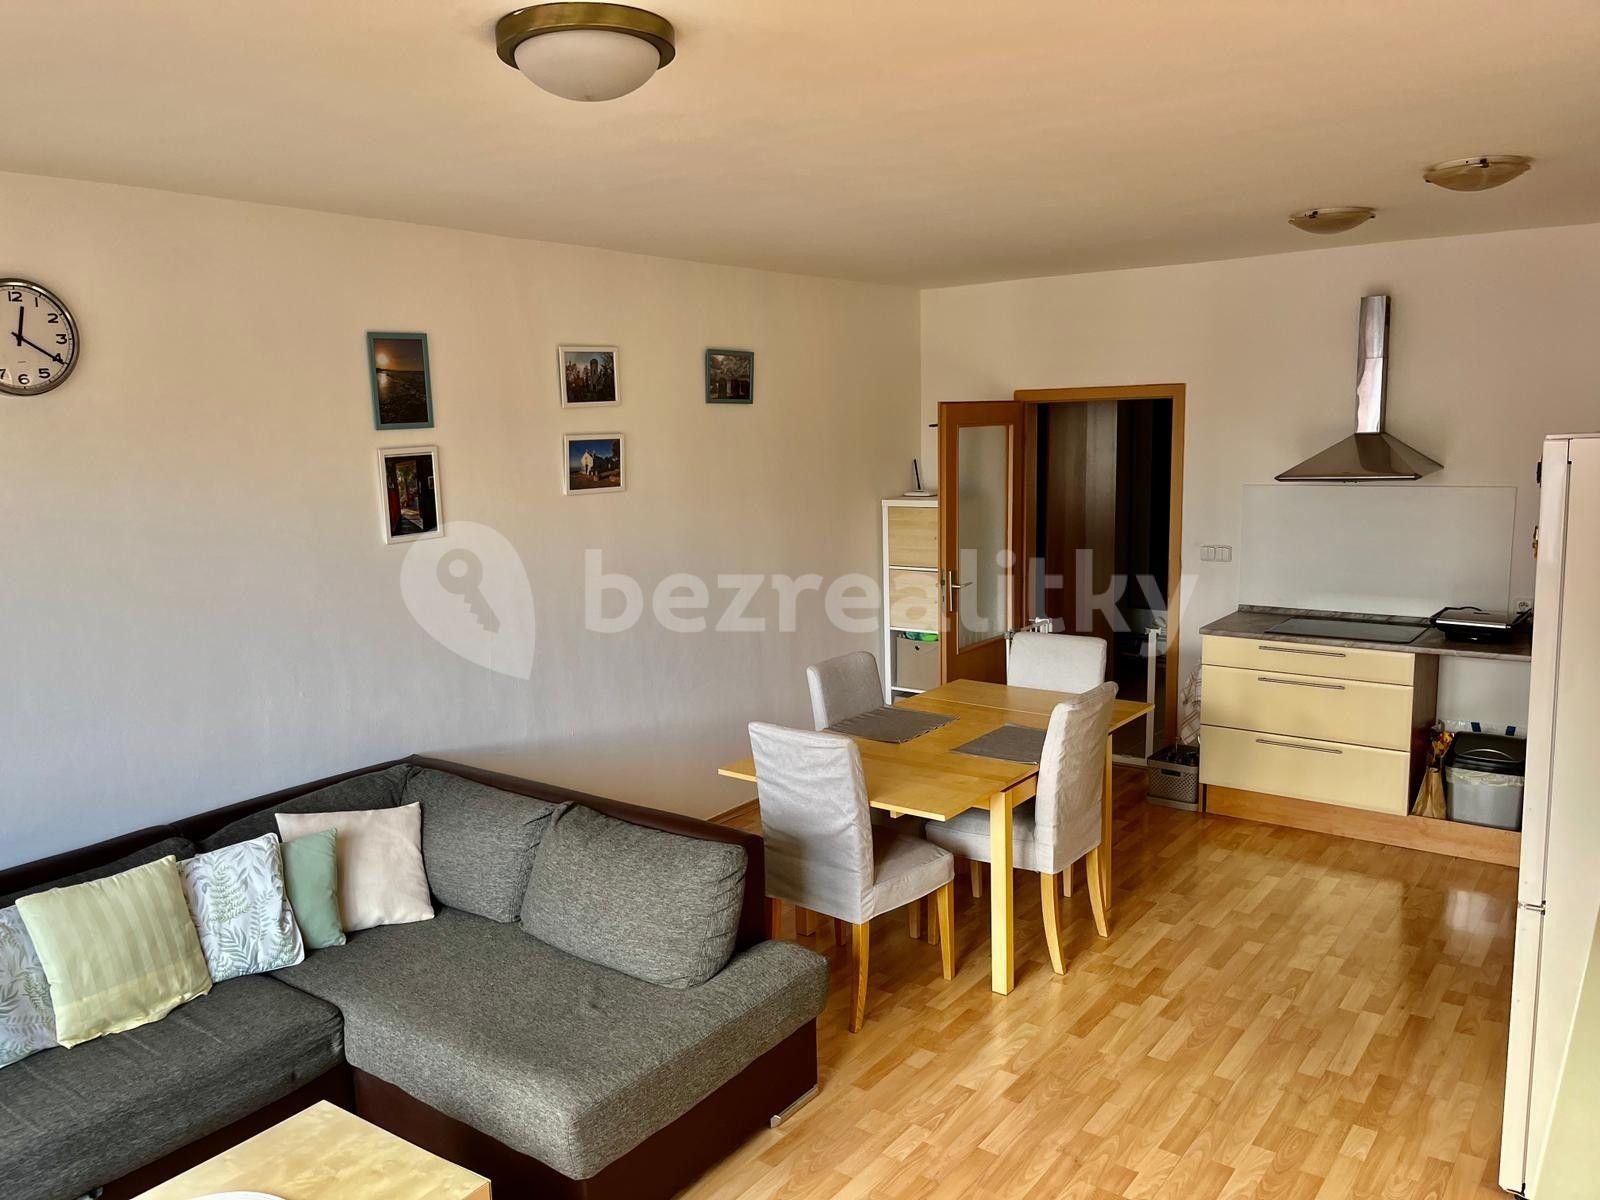 1 bedroom with open-plan kitchen flat for sale, 56 m², Nad Paloučkem, Beroun, Středočeský Region